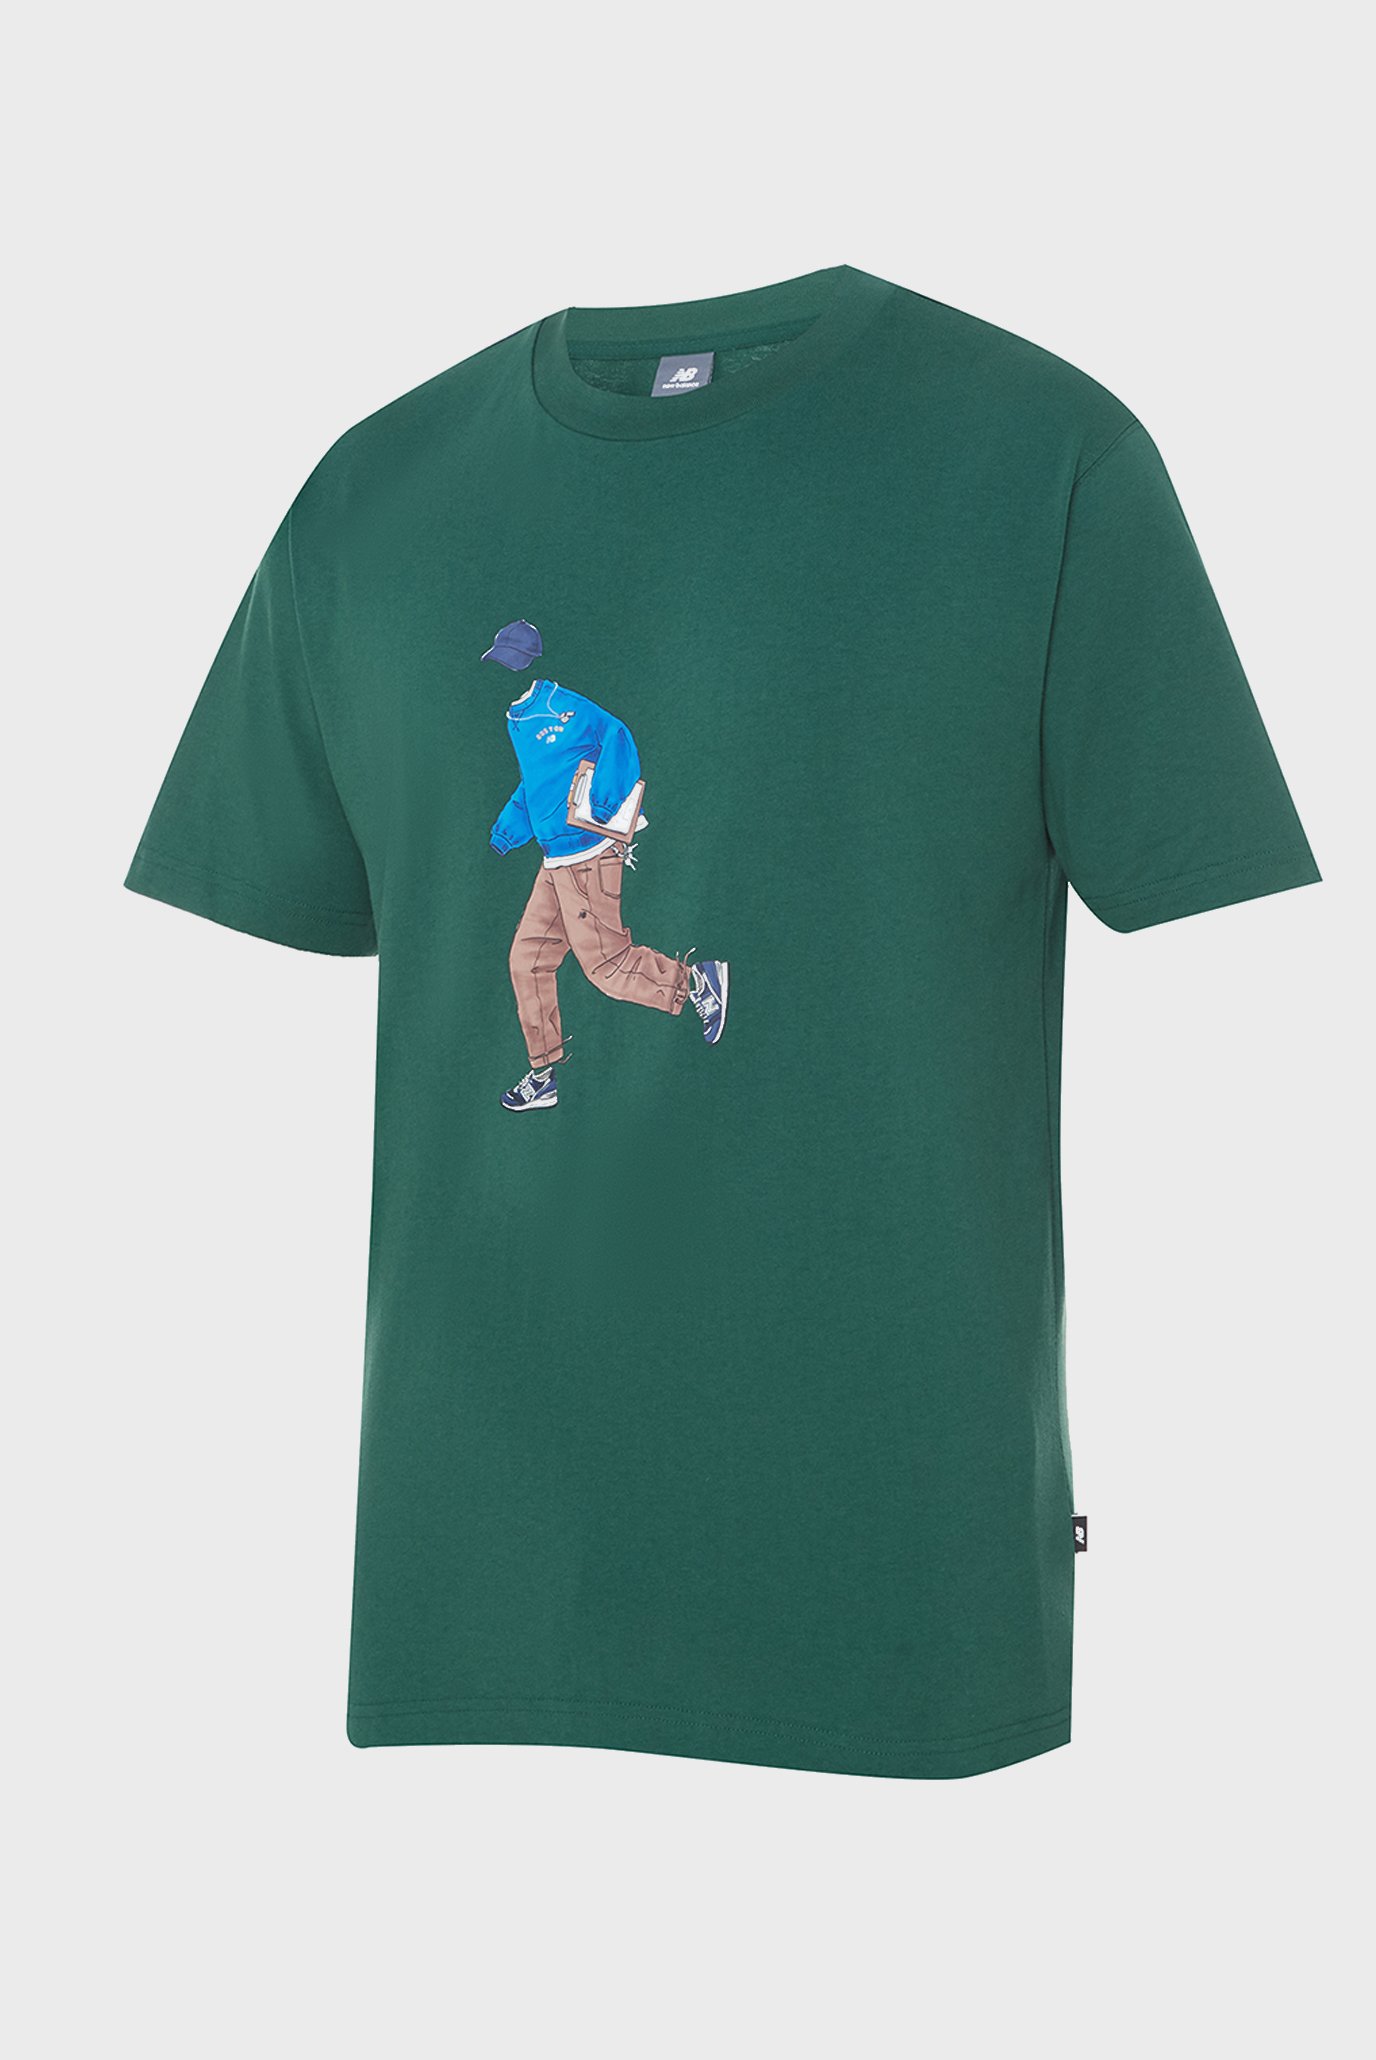 Чоловіча зелена футболка NB Athletics Graphics 1